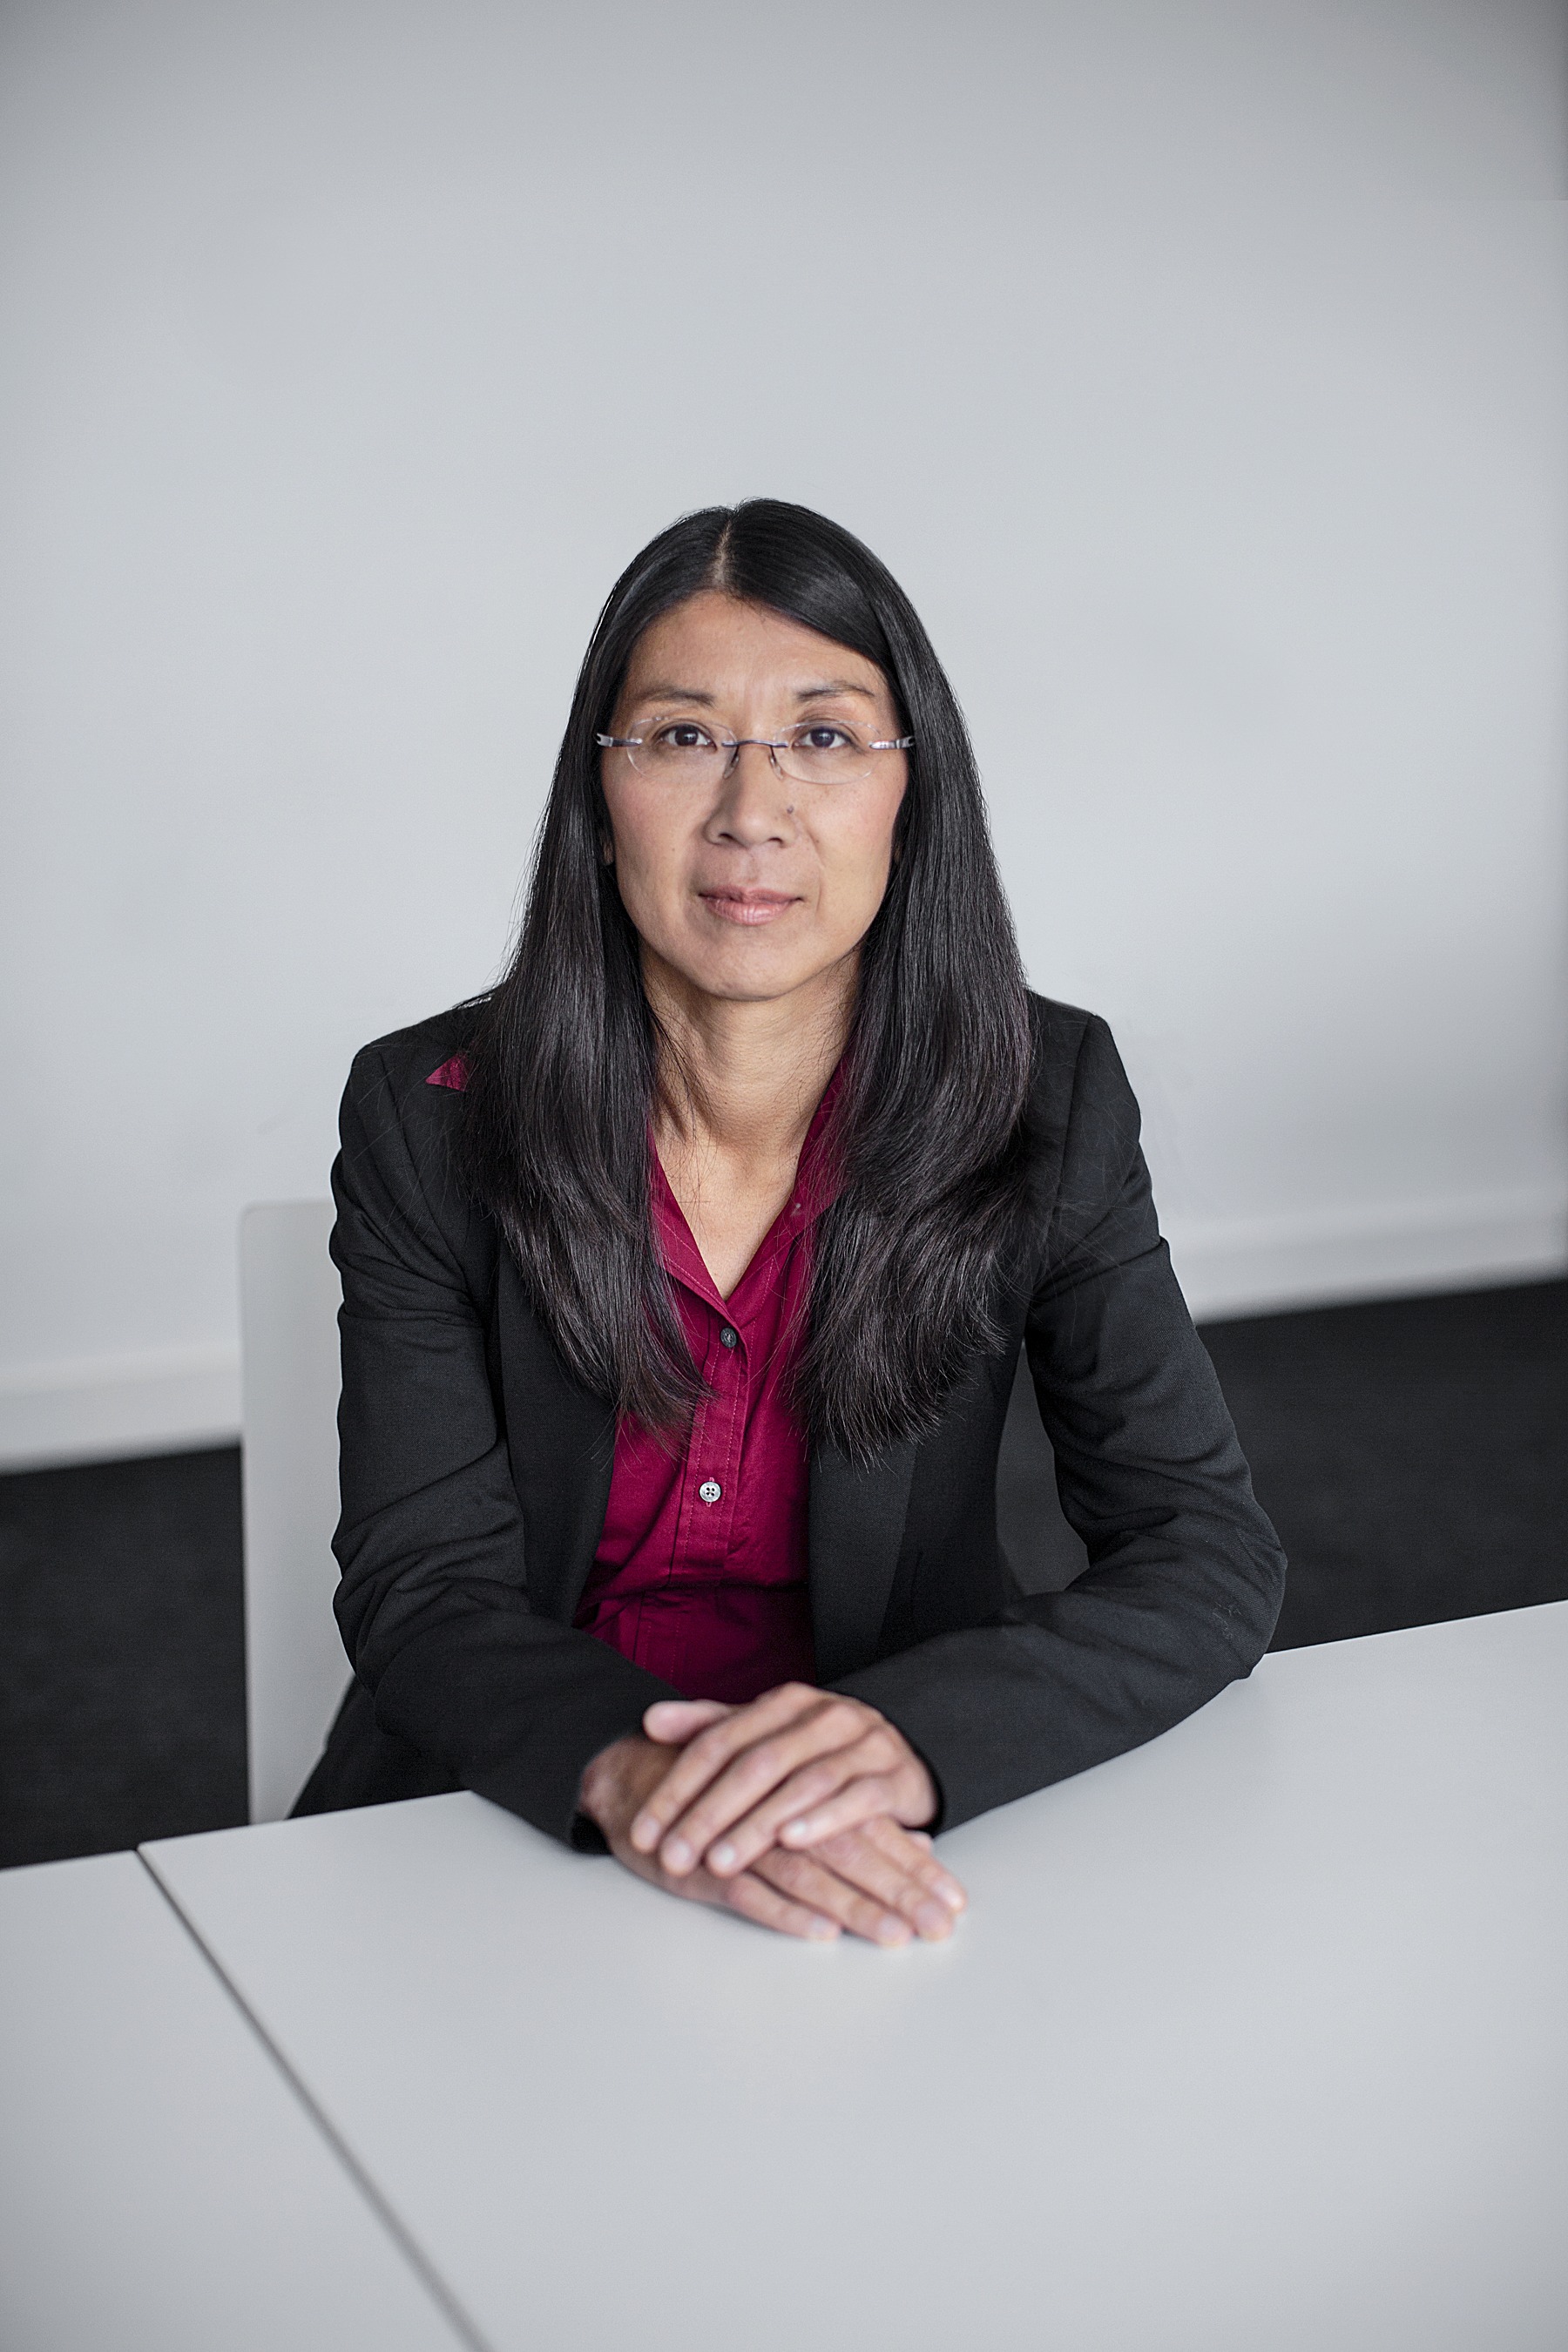 Joanne Liu TIME 100 Women Scientists